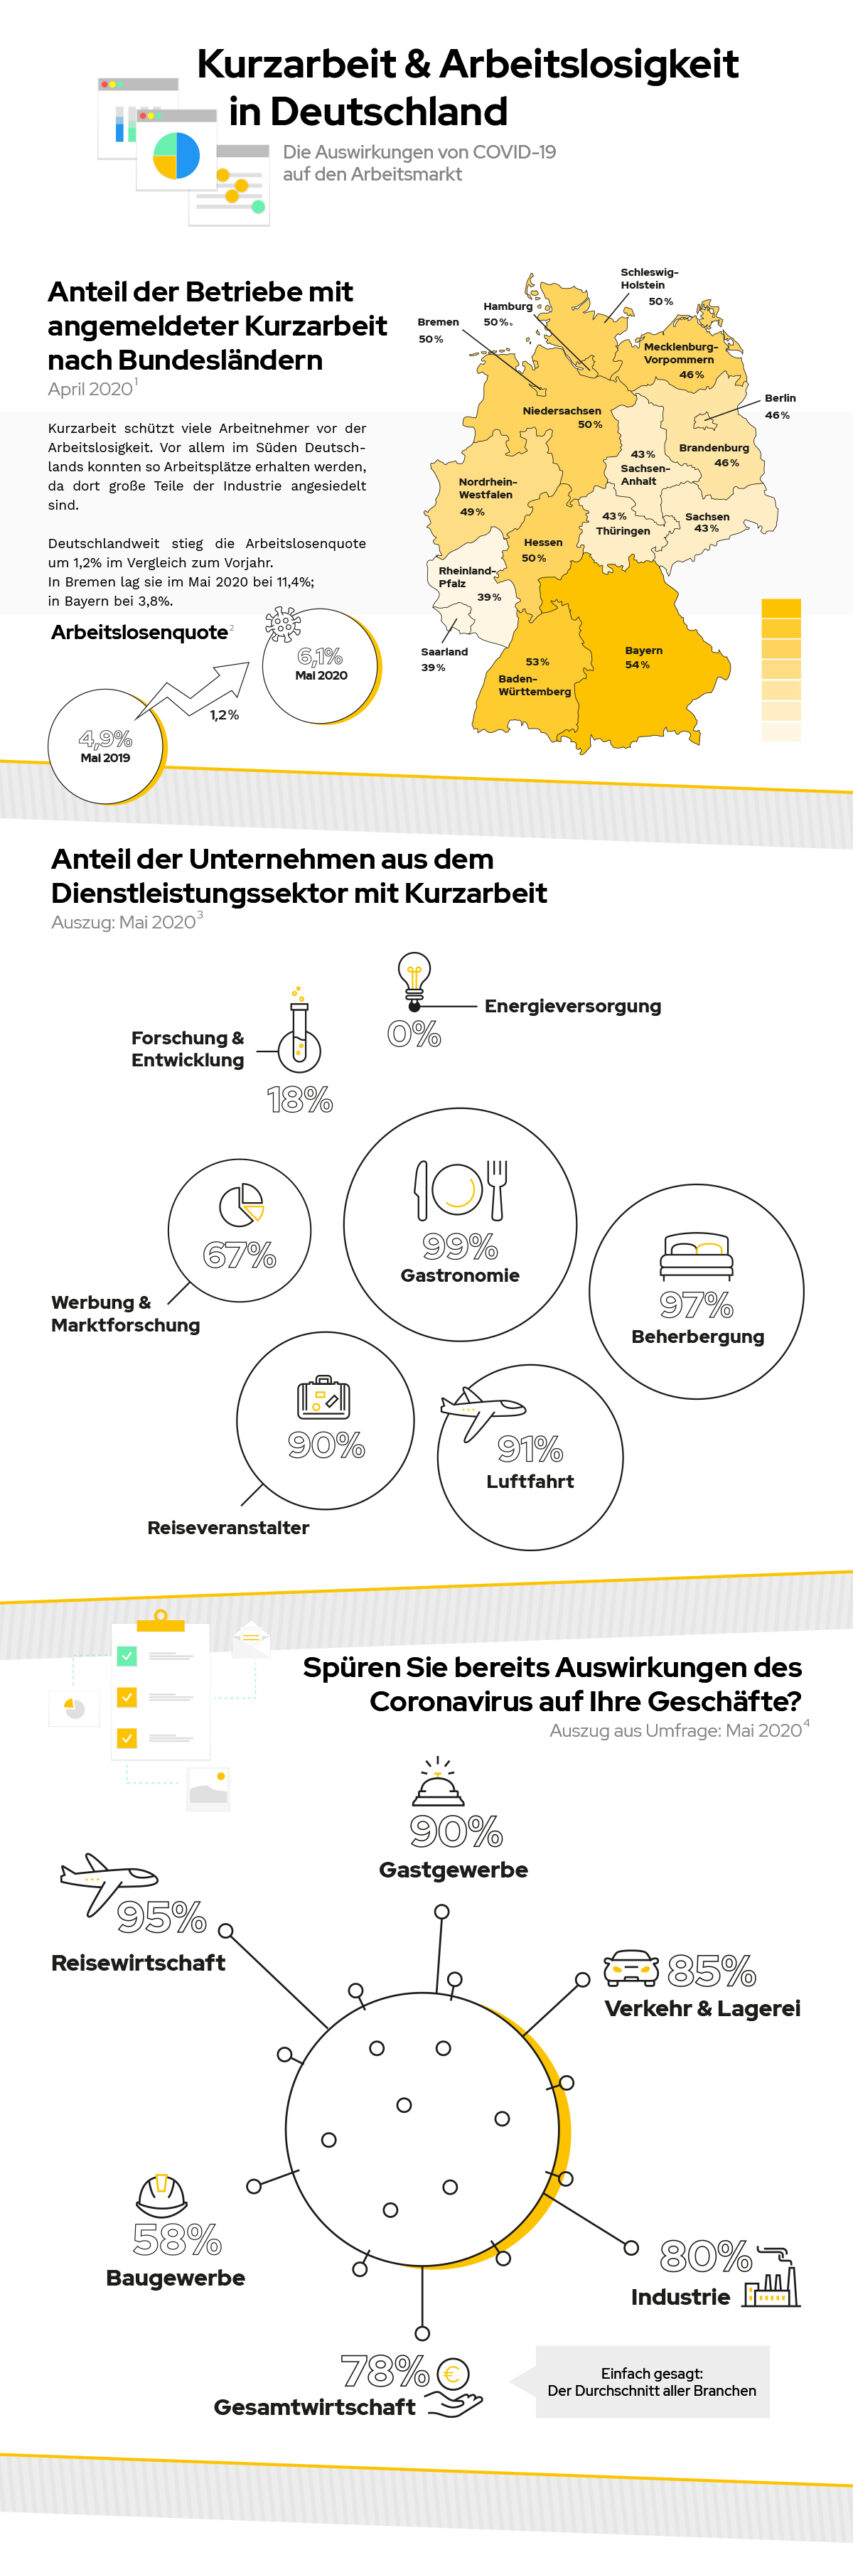 Infographic über die Kurzarbeit und Arbeitslosigkeit in Deutschland